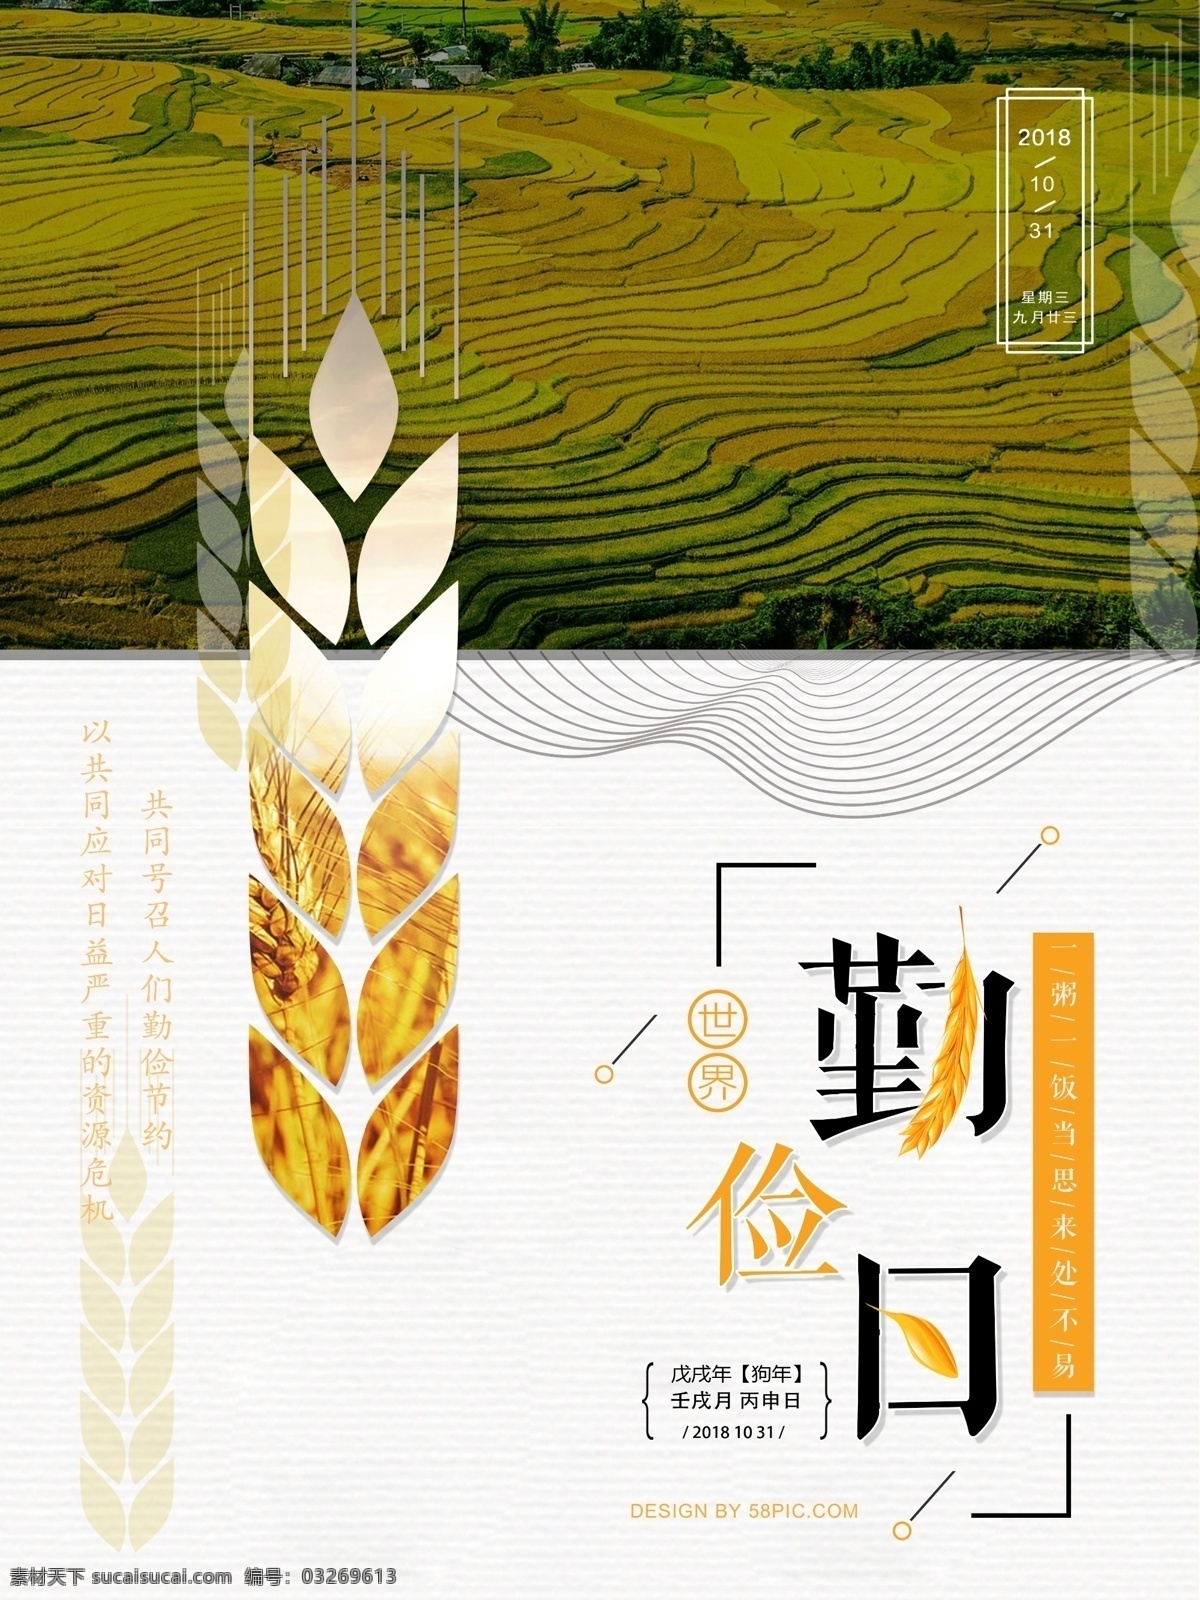 创意 世界 勤俭 日 宣传海报 大气 字体设计 中国风 勤俭日 麦穗 版式 背景 小麦 古风背景 十月